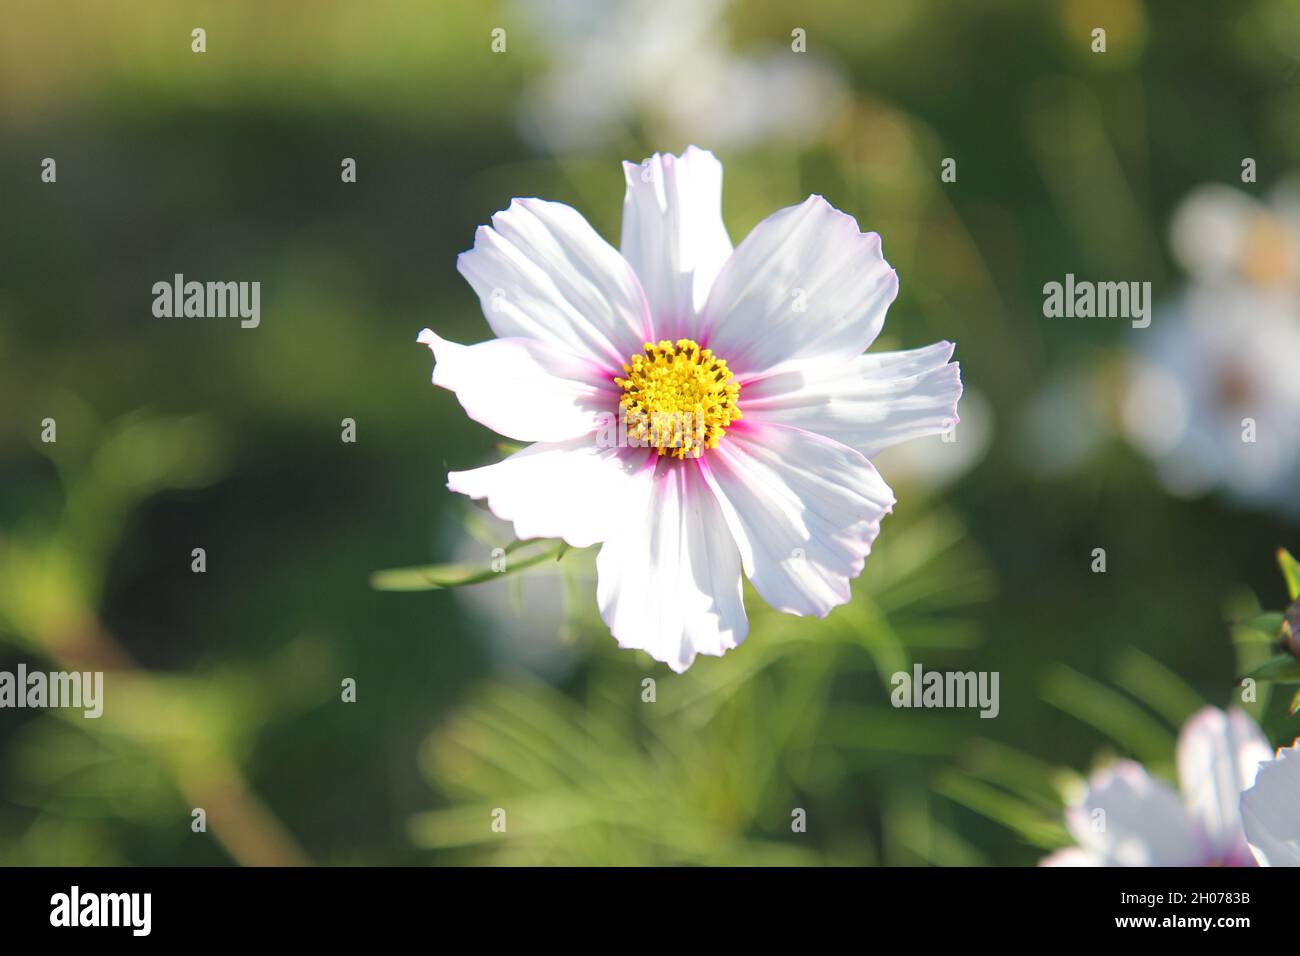 Cosma bianca, cosmo da giardino, isolato su uno sfondo sfocato Foto Stock